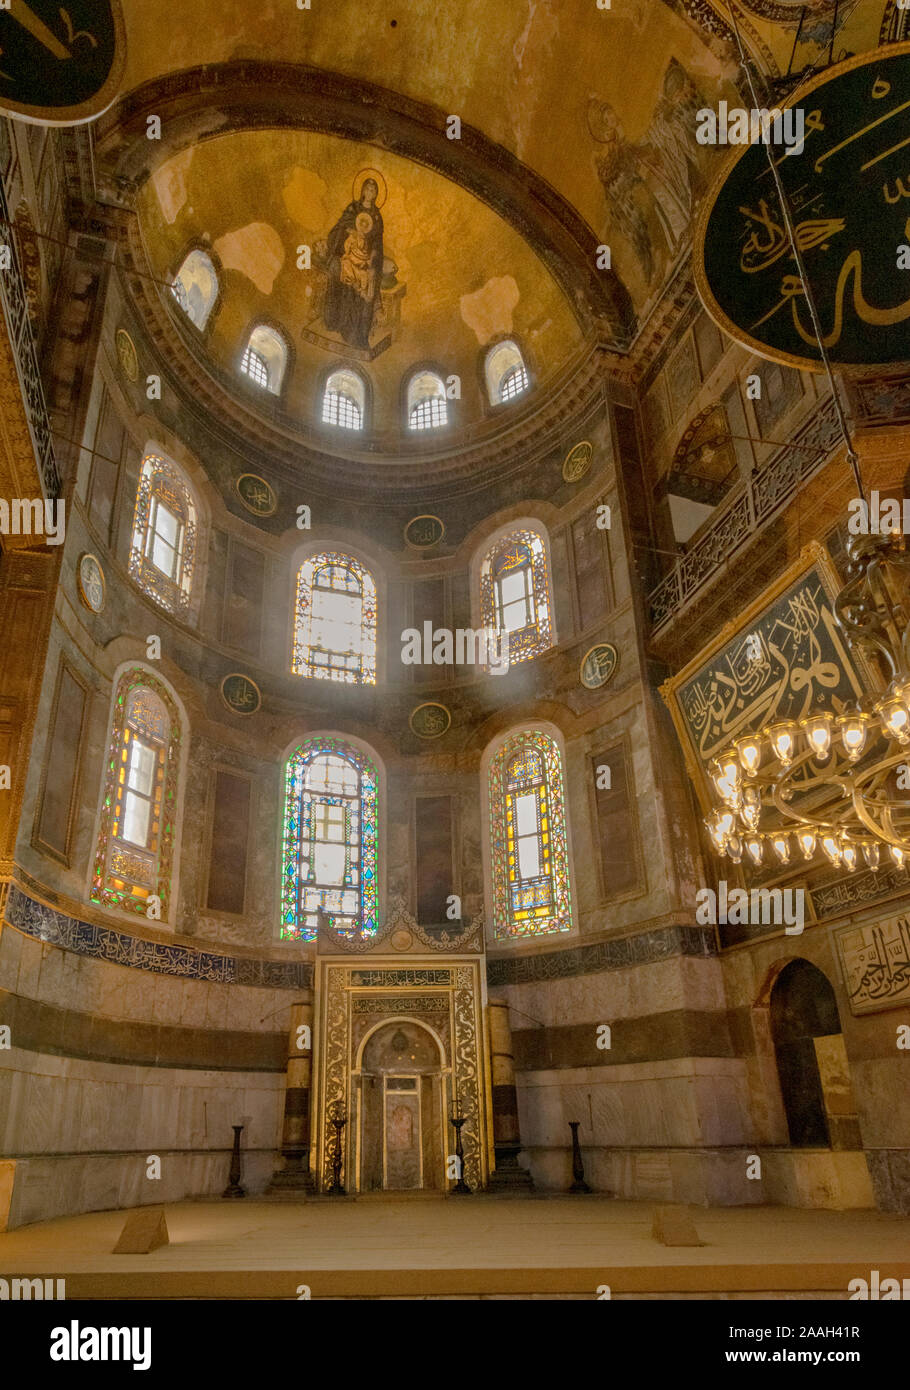 HAGIA SOPHIA ISTANBUL Turquie MOSAÏQUE DE L'abside de l'Intérieur vierge à l'ENFANT PEINT SUR LE PETIT DOME LE MIHRAB SOUS LES FENÊTRES Banque D'Images